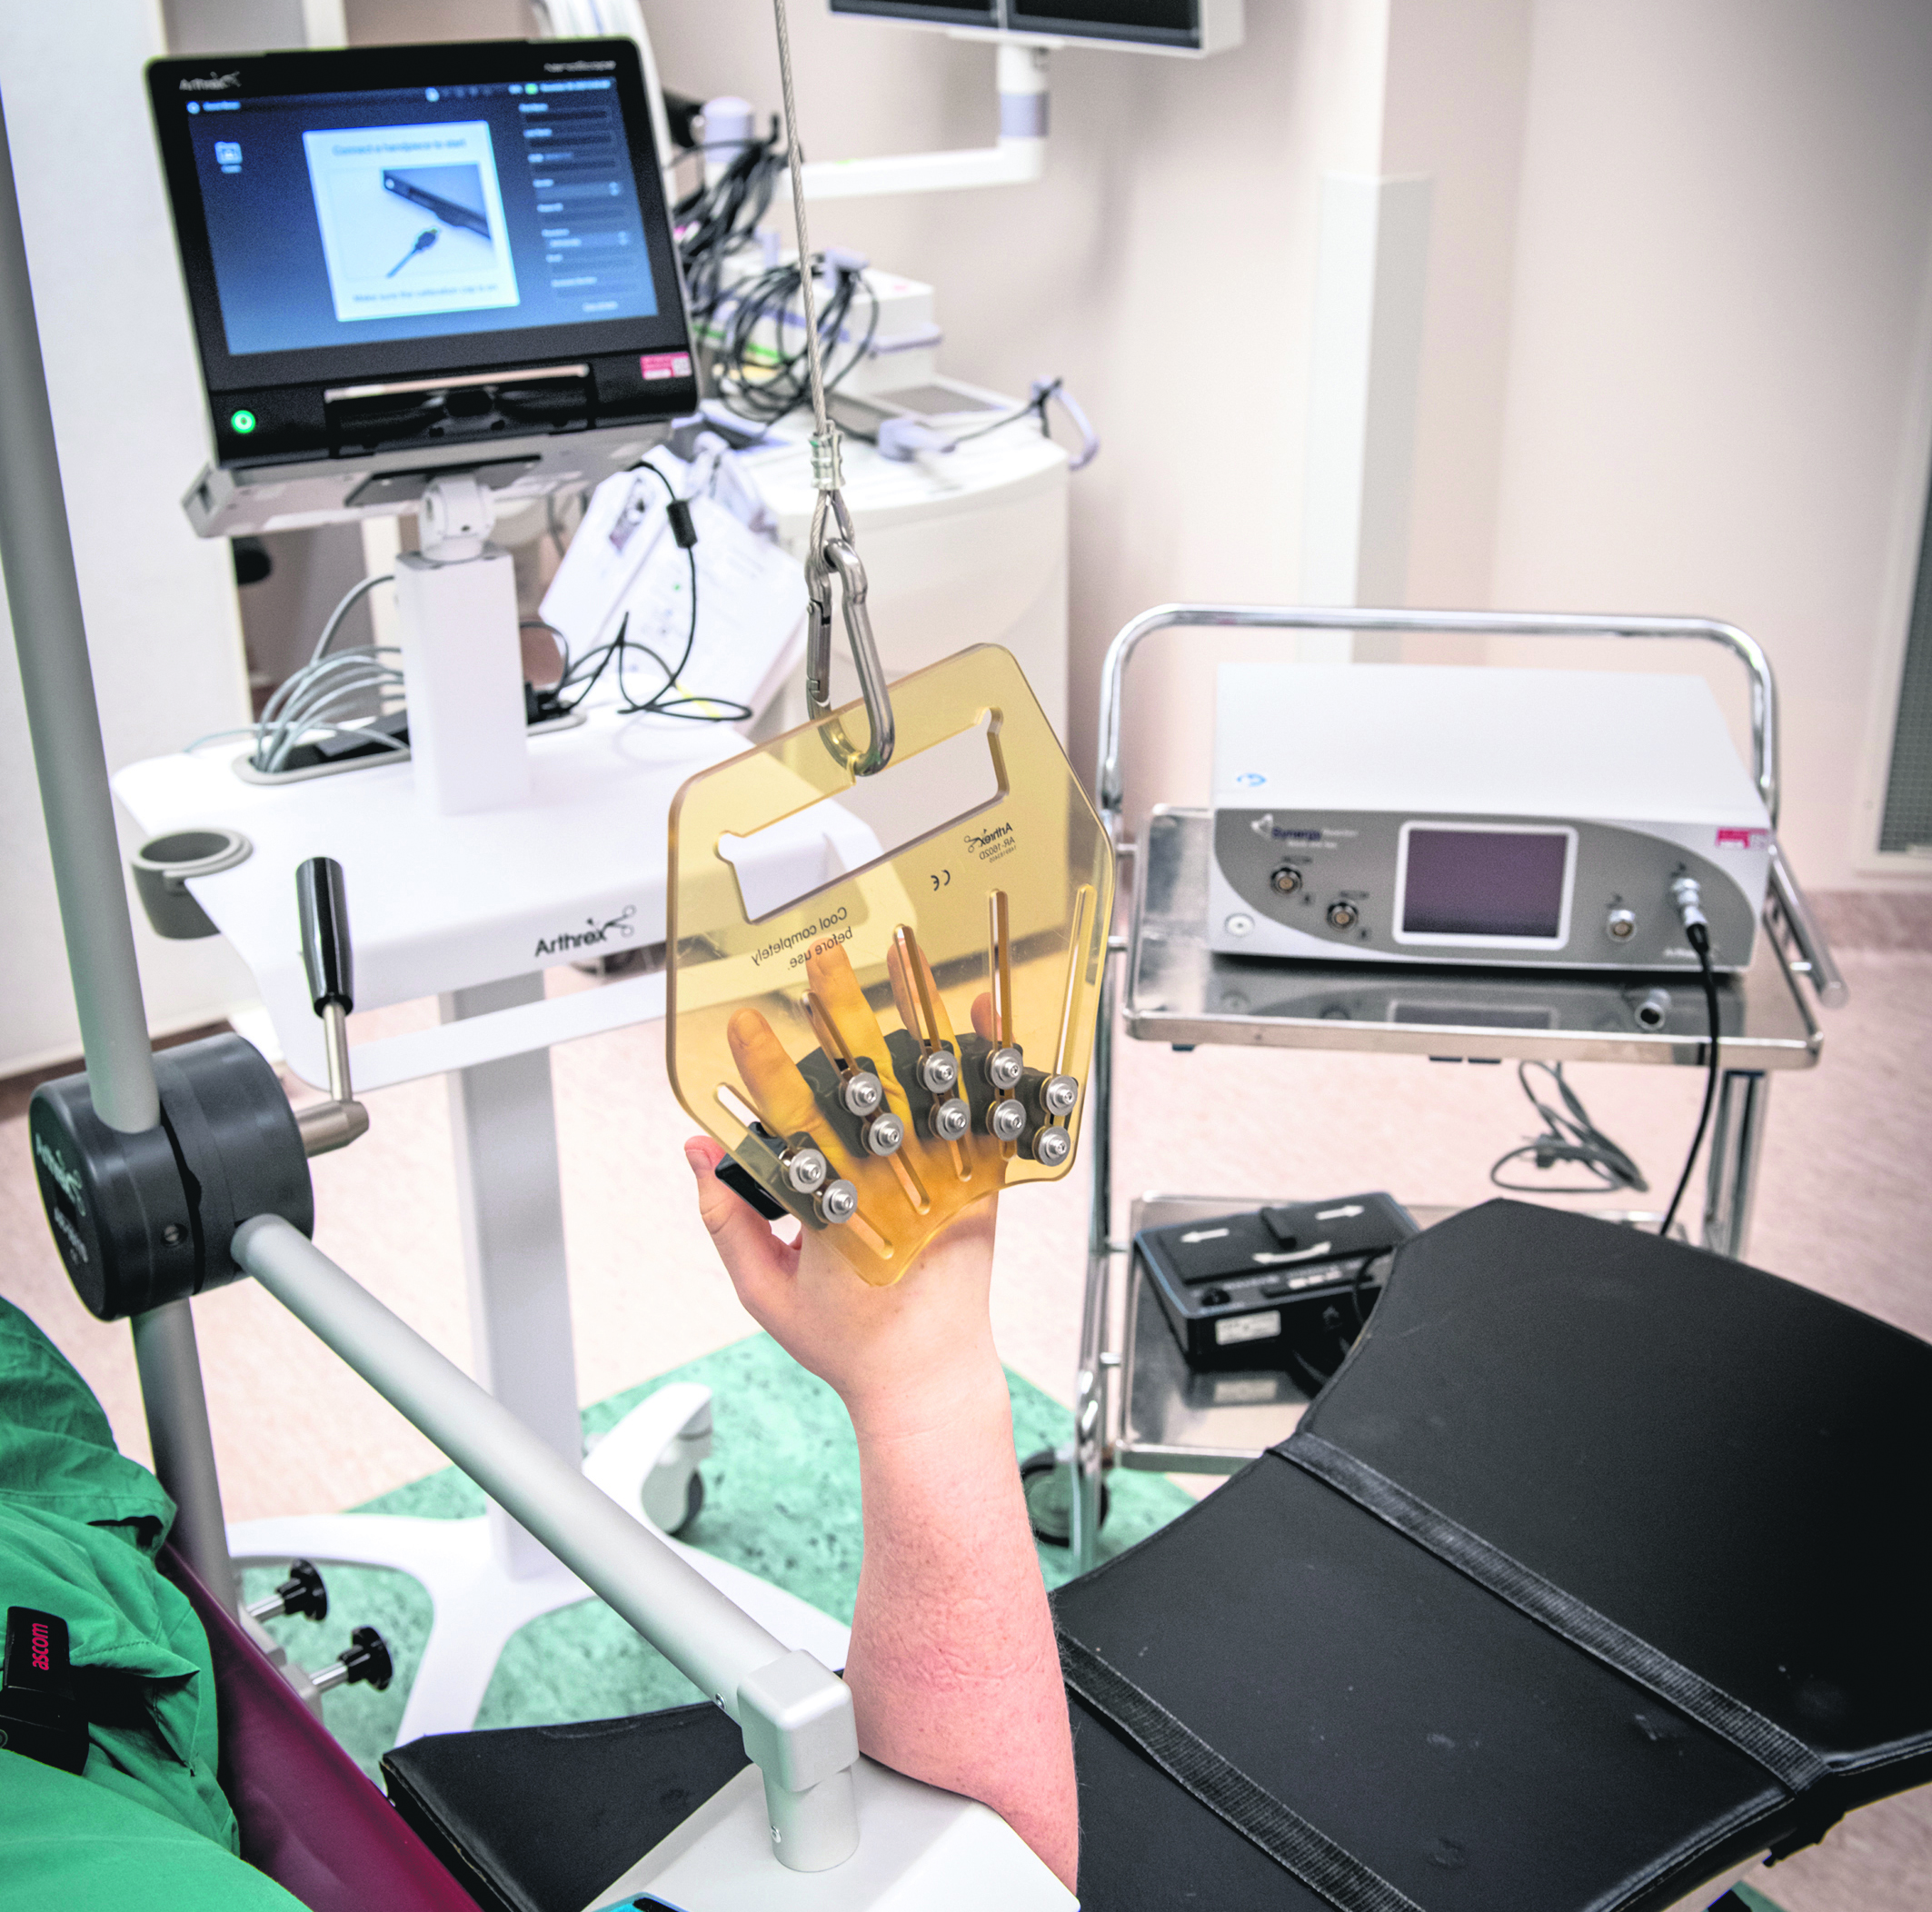 Patientens handled kopplas till en dator som visar bilderna på skärmen.